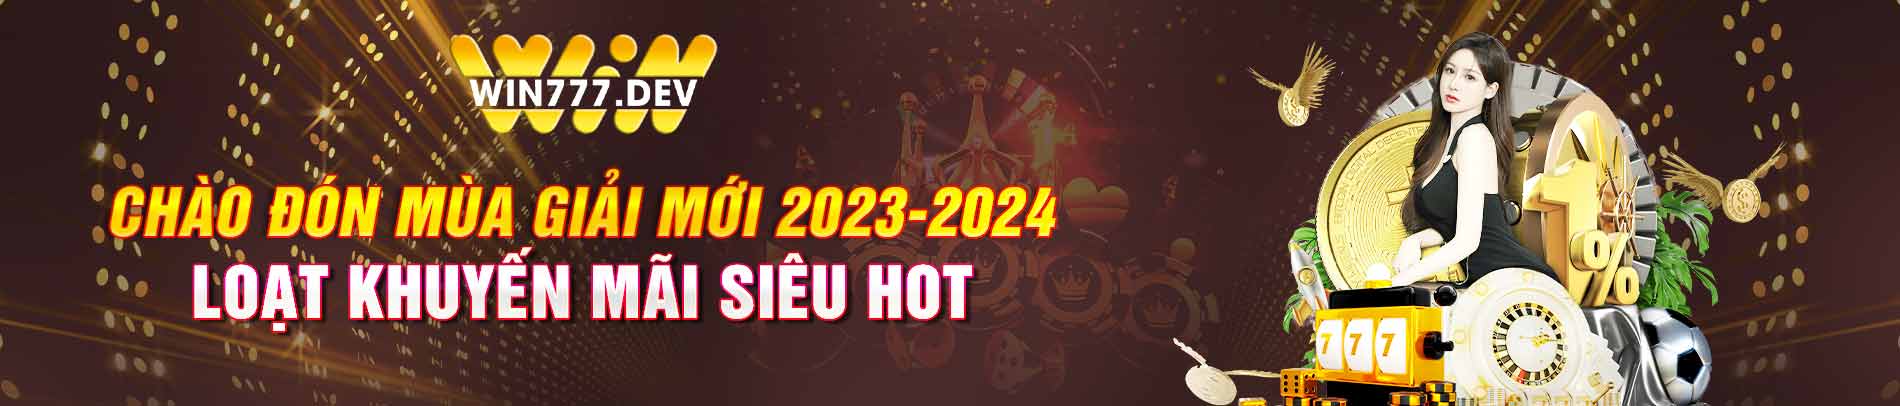 Win777 mùa giải mới 2023 - 2024